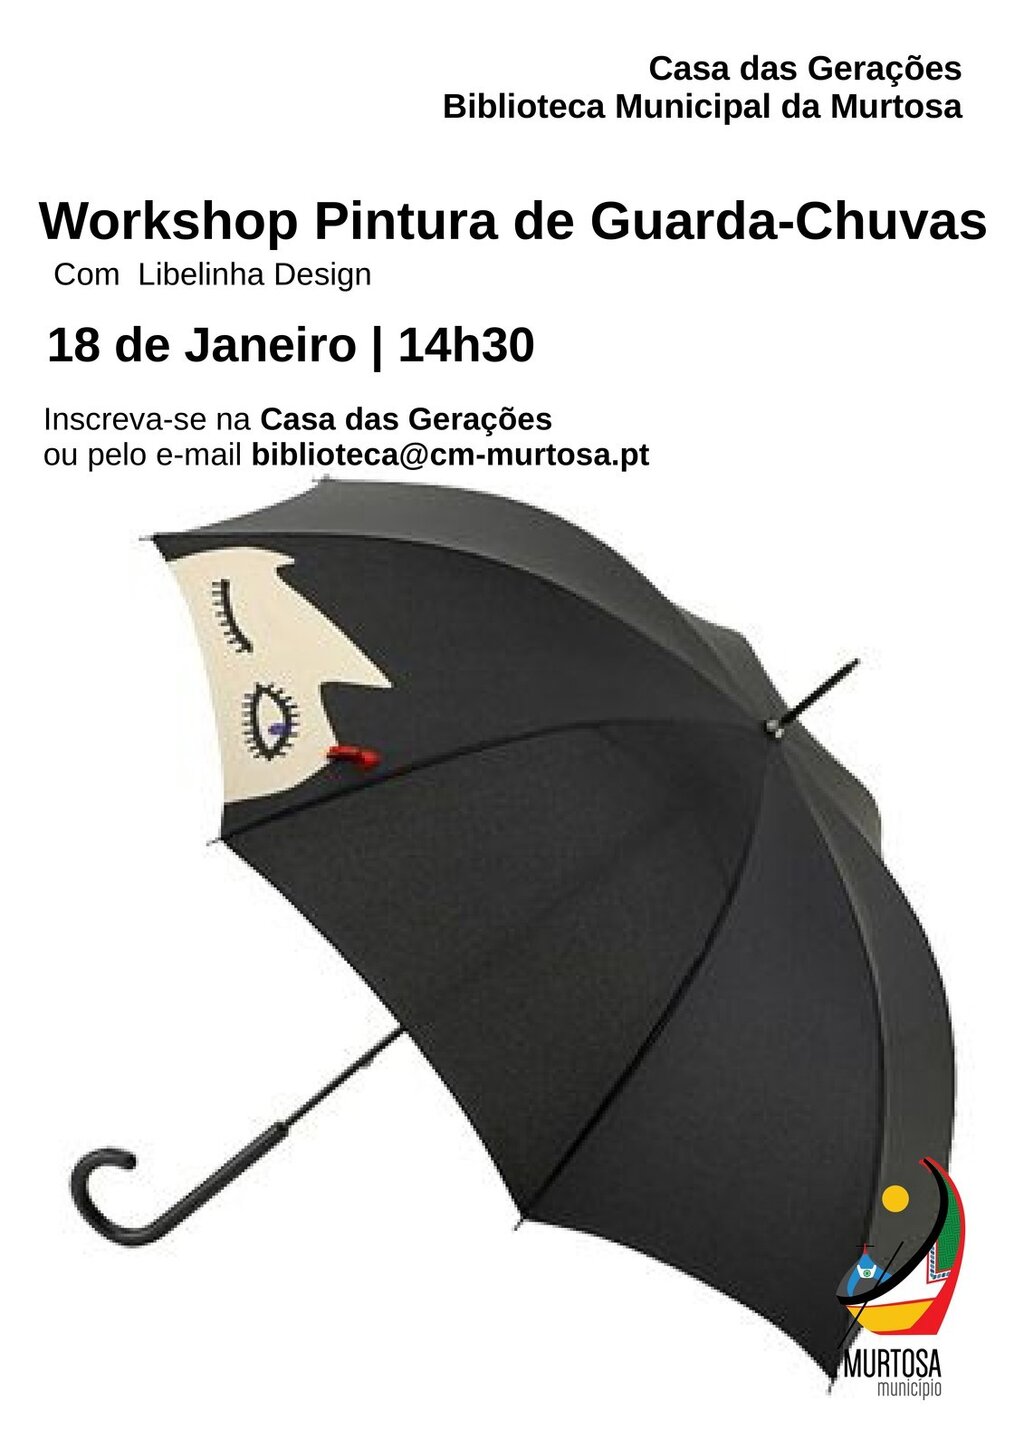 Workshop de pintura de guarda-chuvas